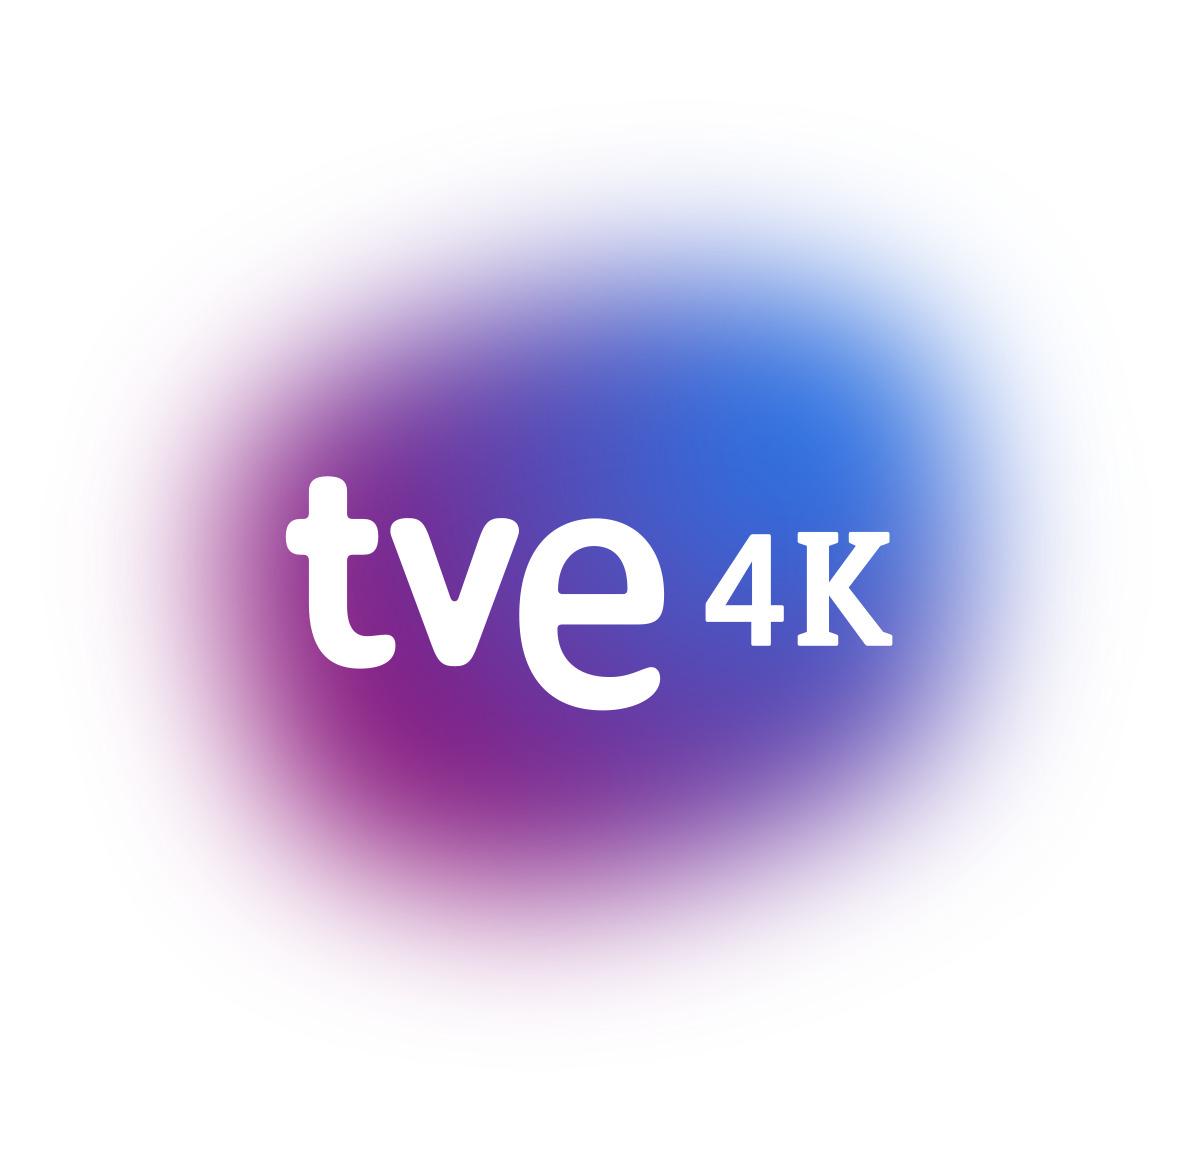 Más de 50 canales de la TDT están probando el estándar 4K